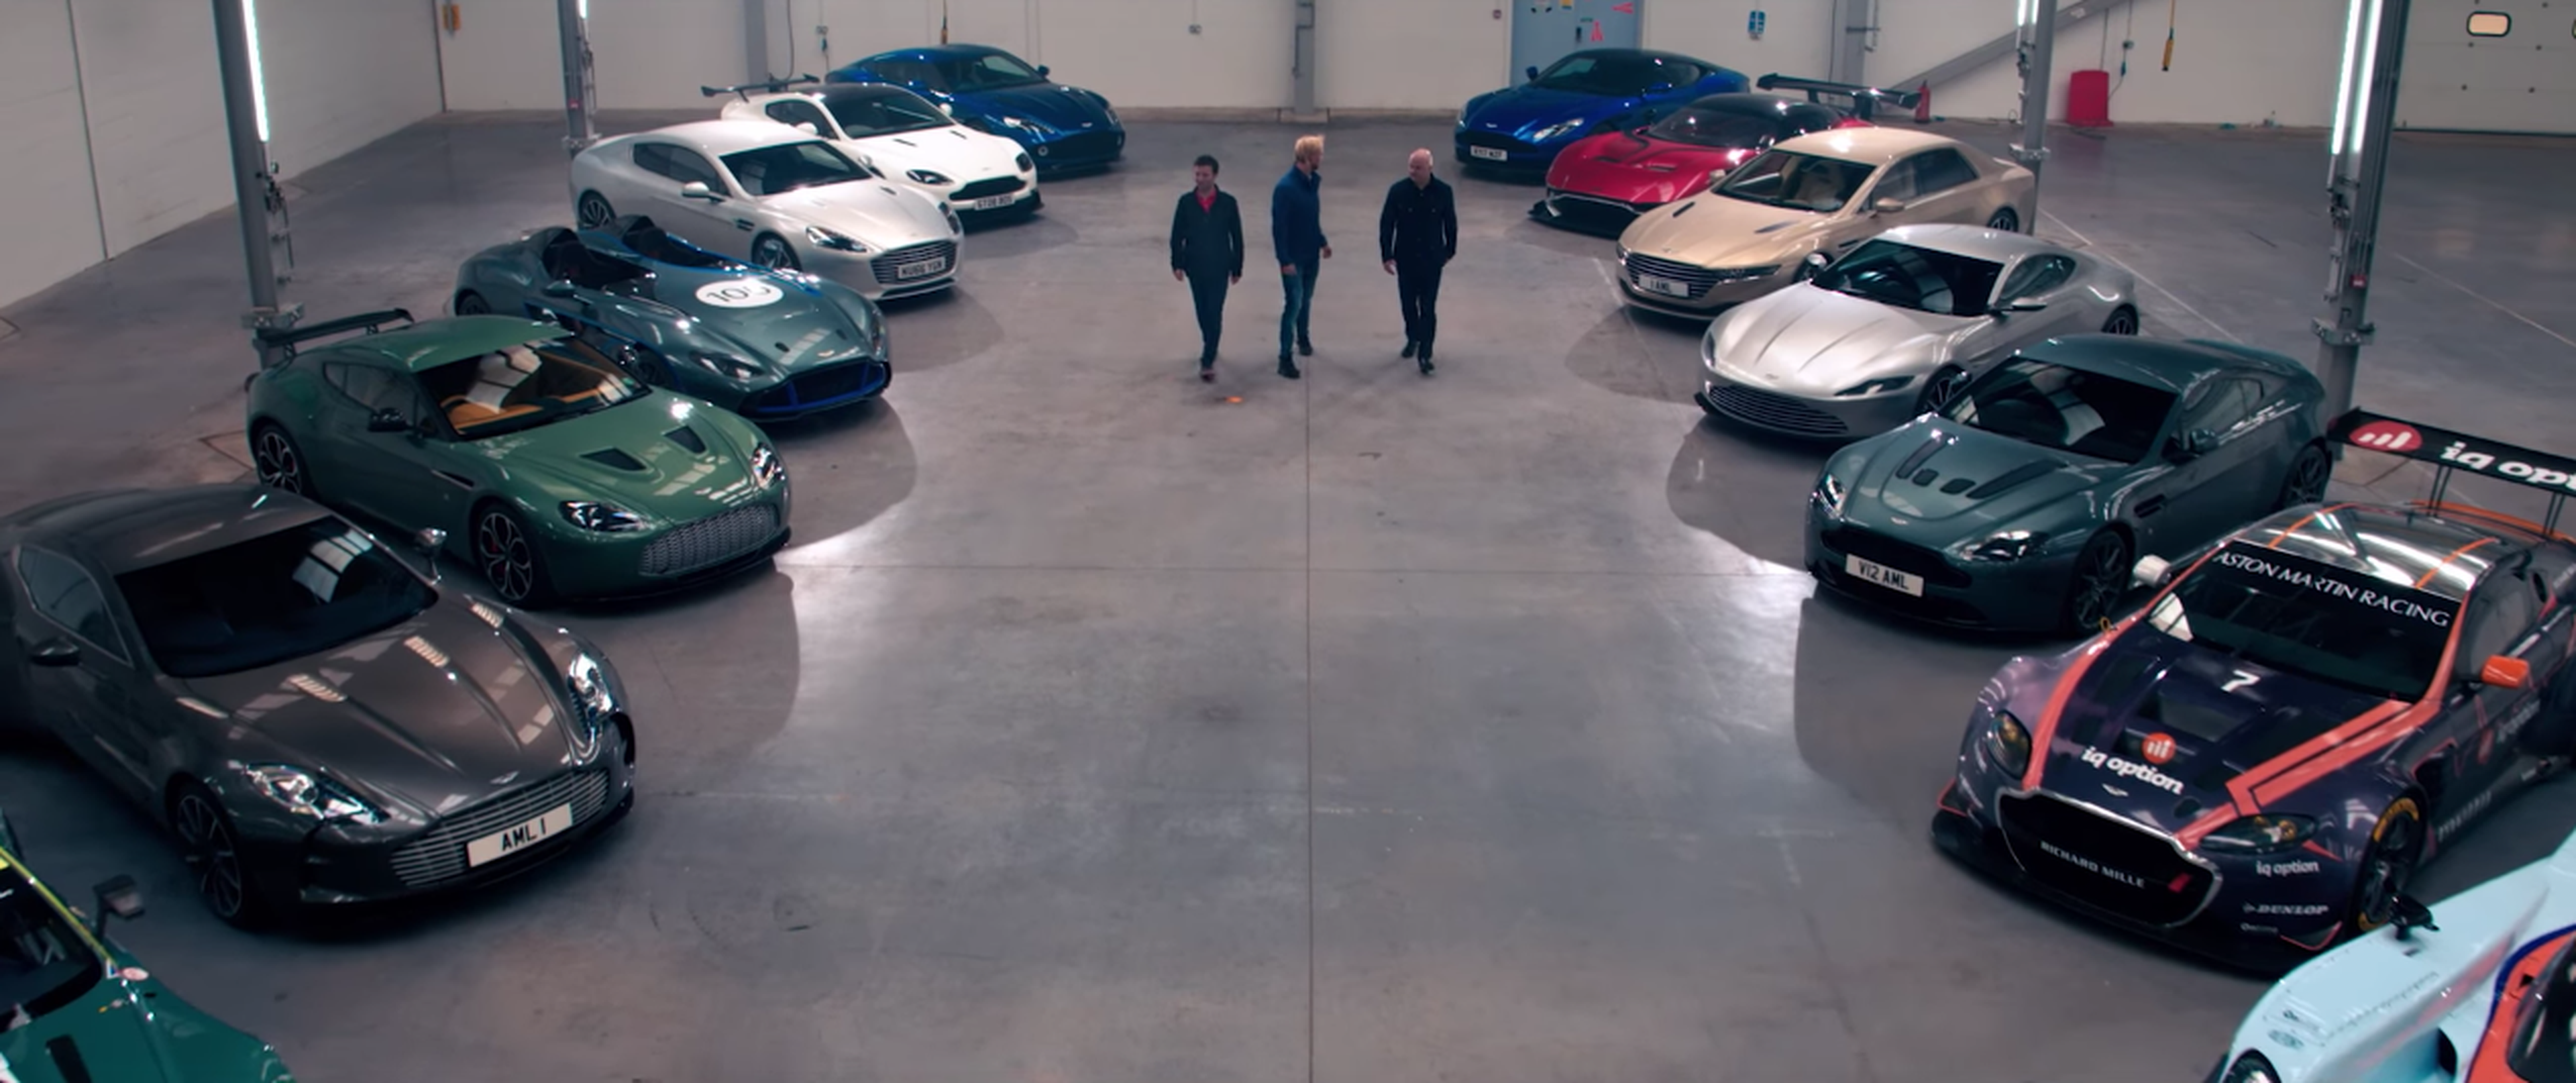 El vídeo de la semana lo trae... ¡Aston Martin! Imperdible